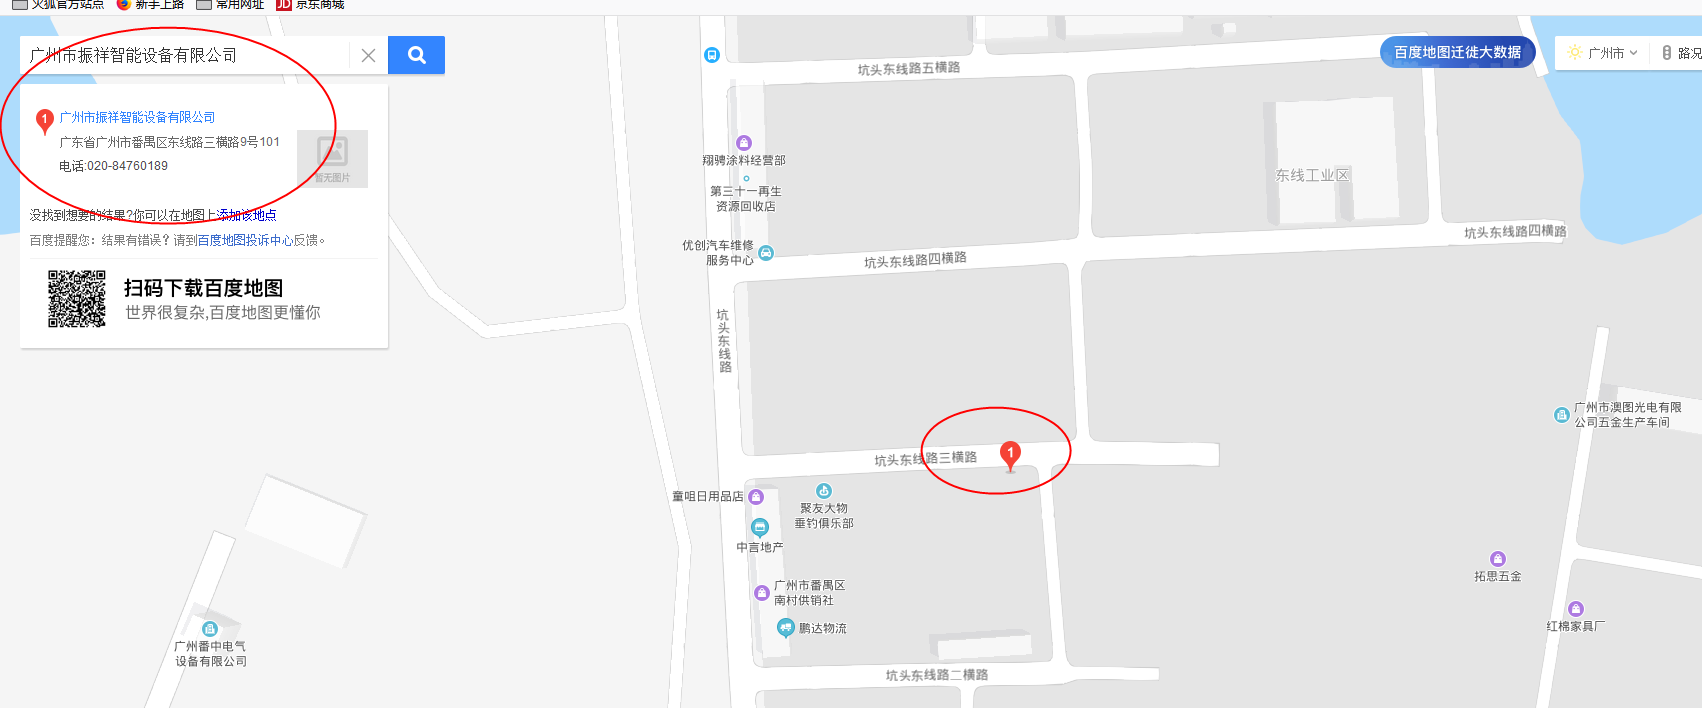 广州市振祥智能设备有限公司(图1)